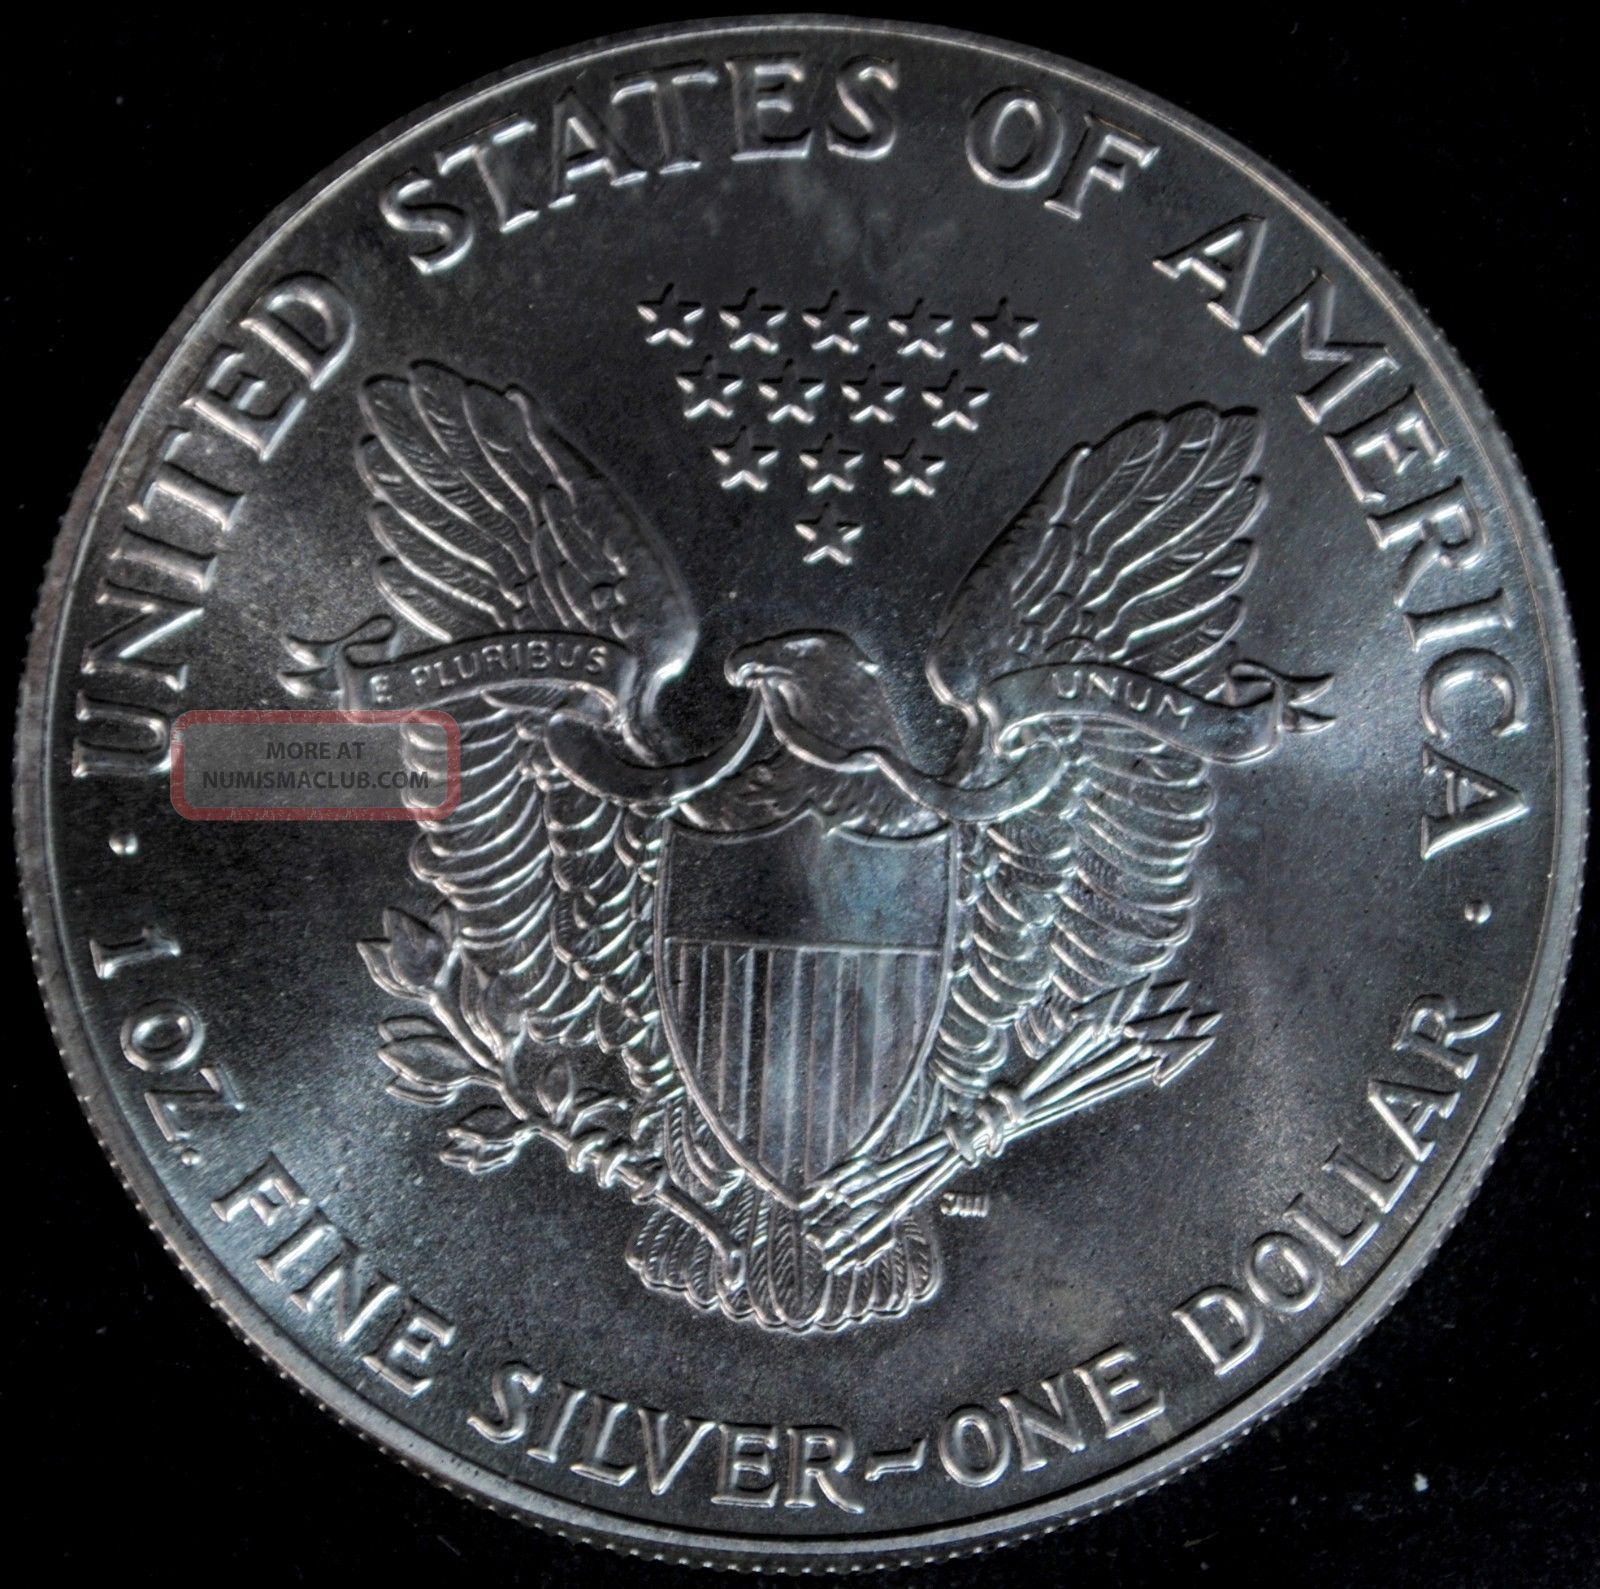 1986 Silver American Eagle $1 One Dollar Coin - 1 Troy Oz. Fine Silver